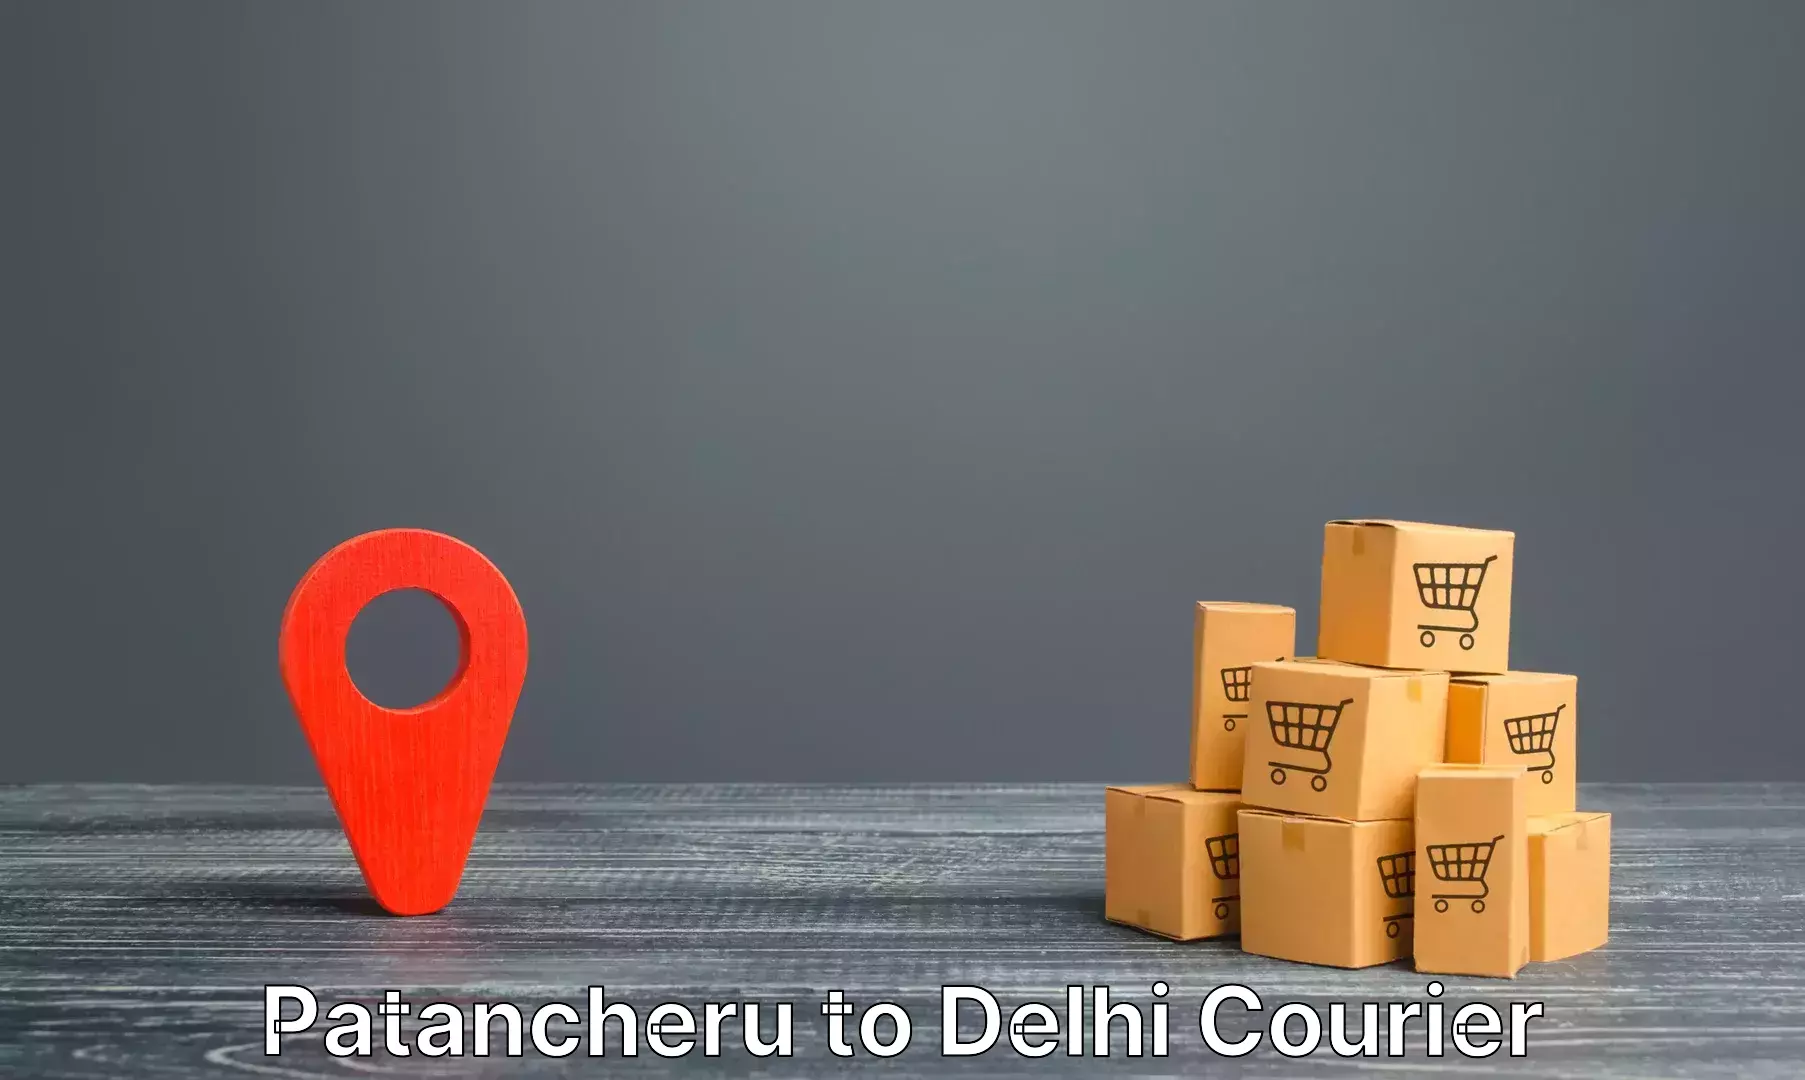 Baggage transport network Patancheru to NCR